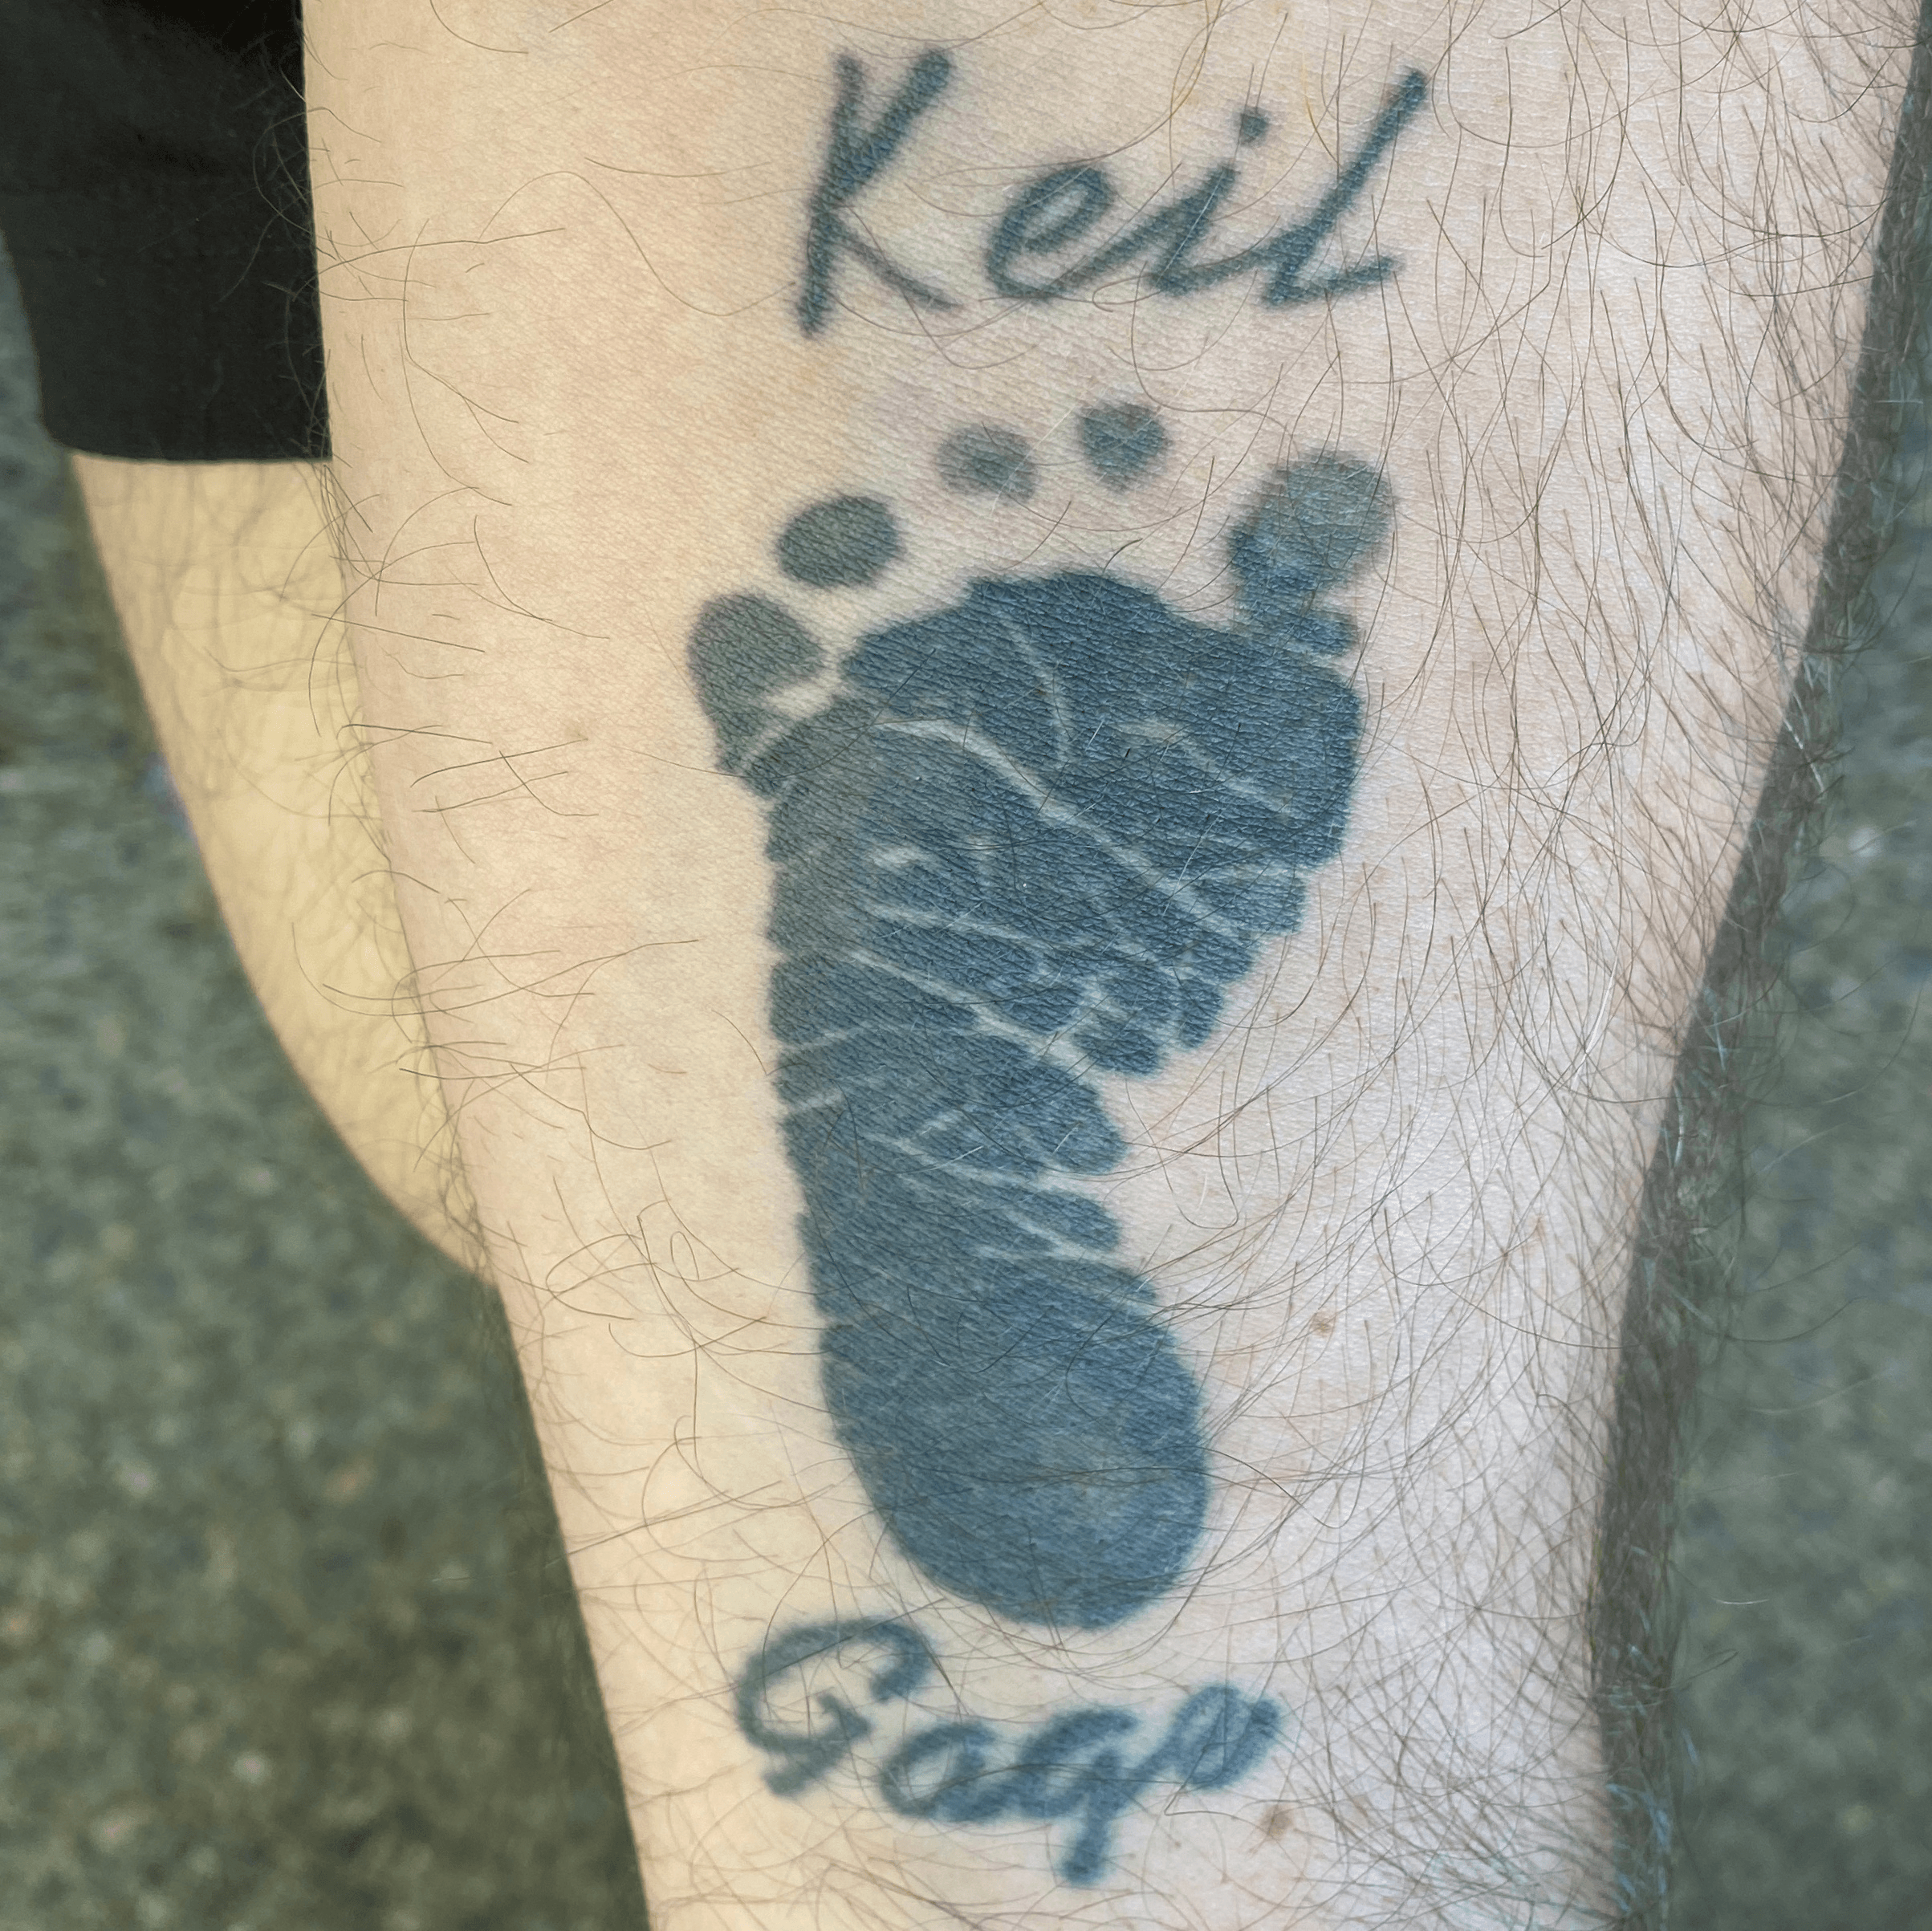 75 Baby Footprint Tattoo Ideas You Will Love  Wild Tattoo Art